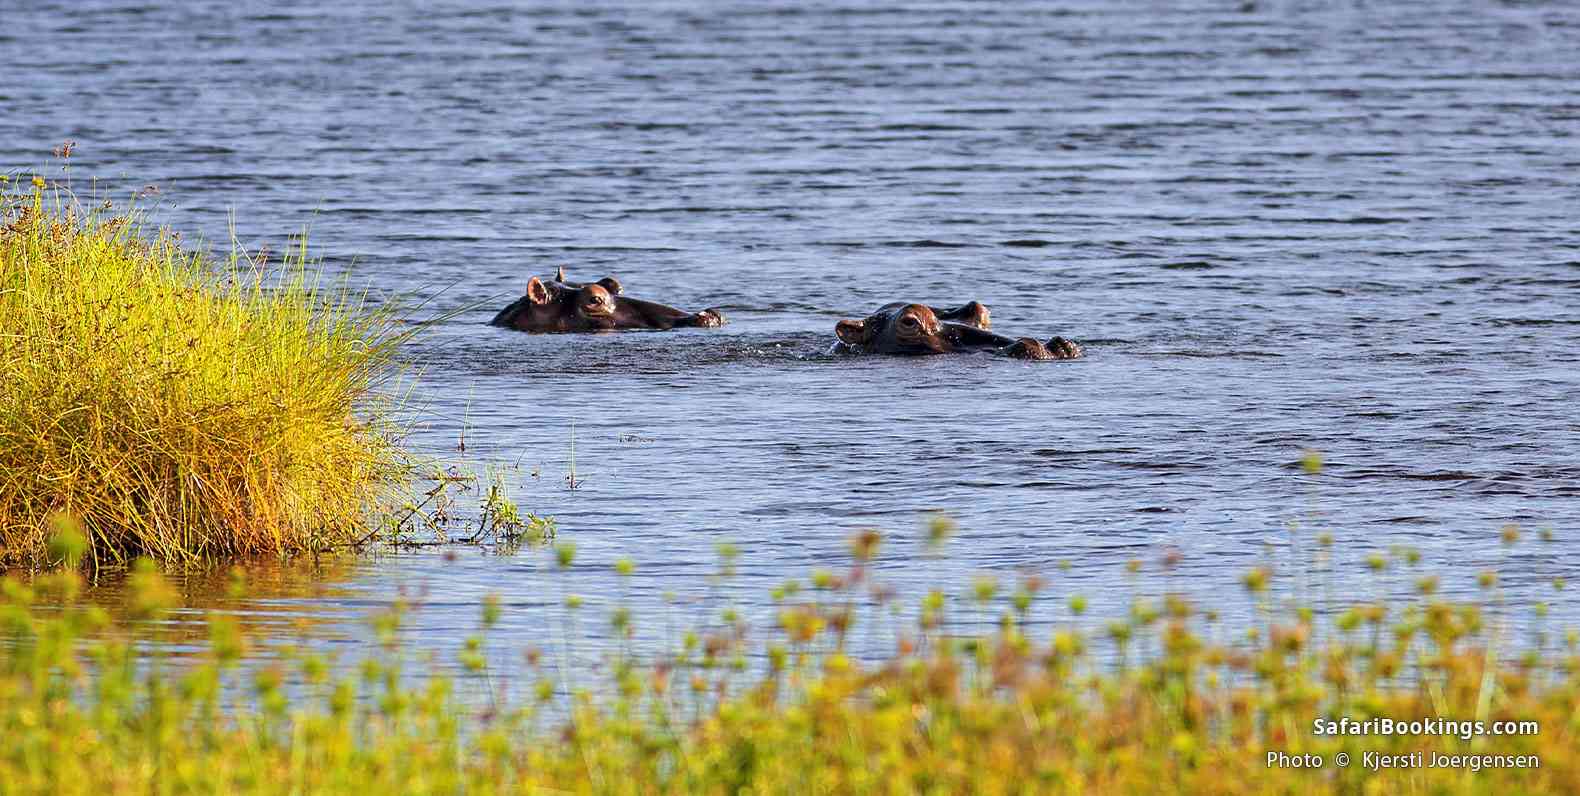 Hippos in the water on Mafia Island